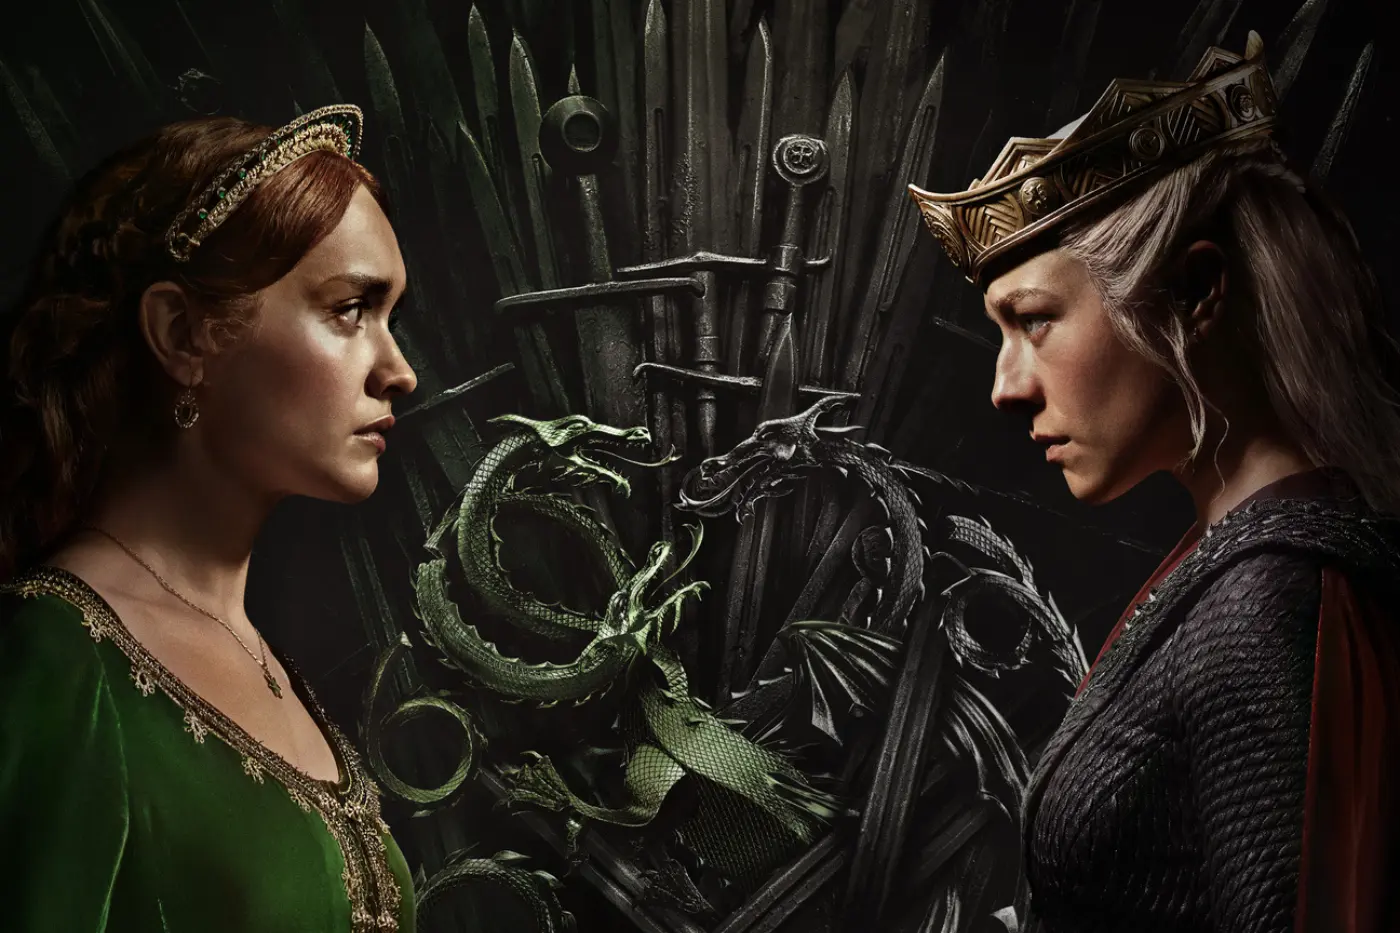 Postermotiv der zweiten Staffel House of the Dragon, in der Mitte ist der Eiserne Thron mit Schwertern und zwei sich kreuzenden Drachen zu sehen, daneben stehen sich Alicent und Rhaenyra gegenüber